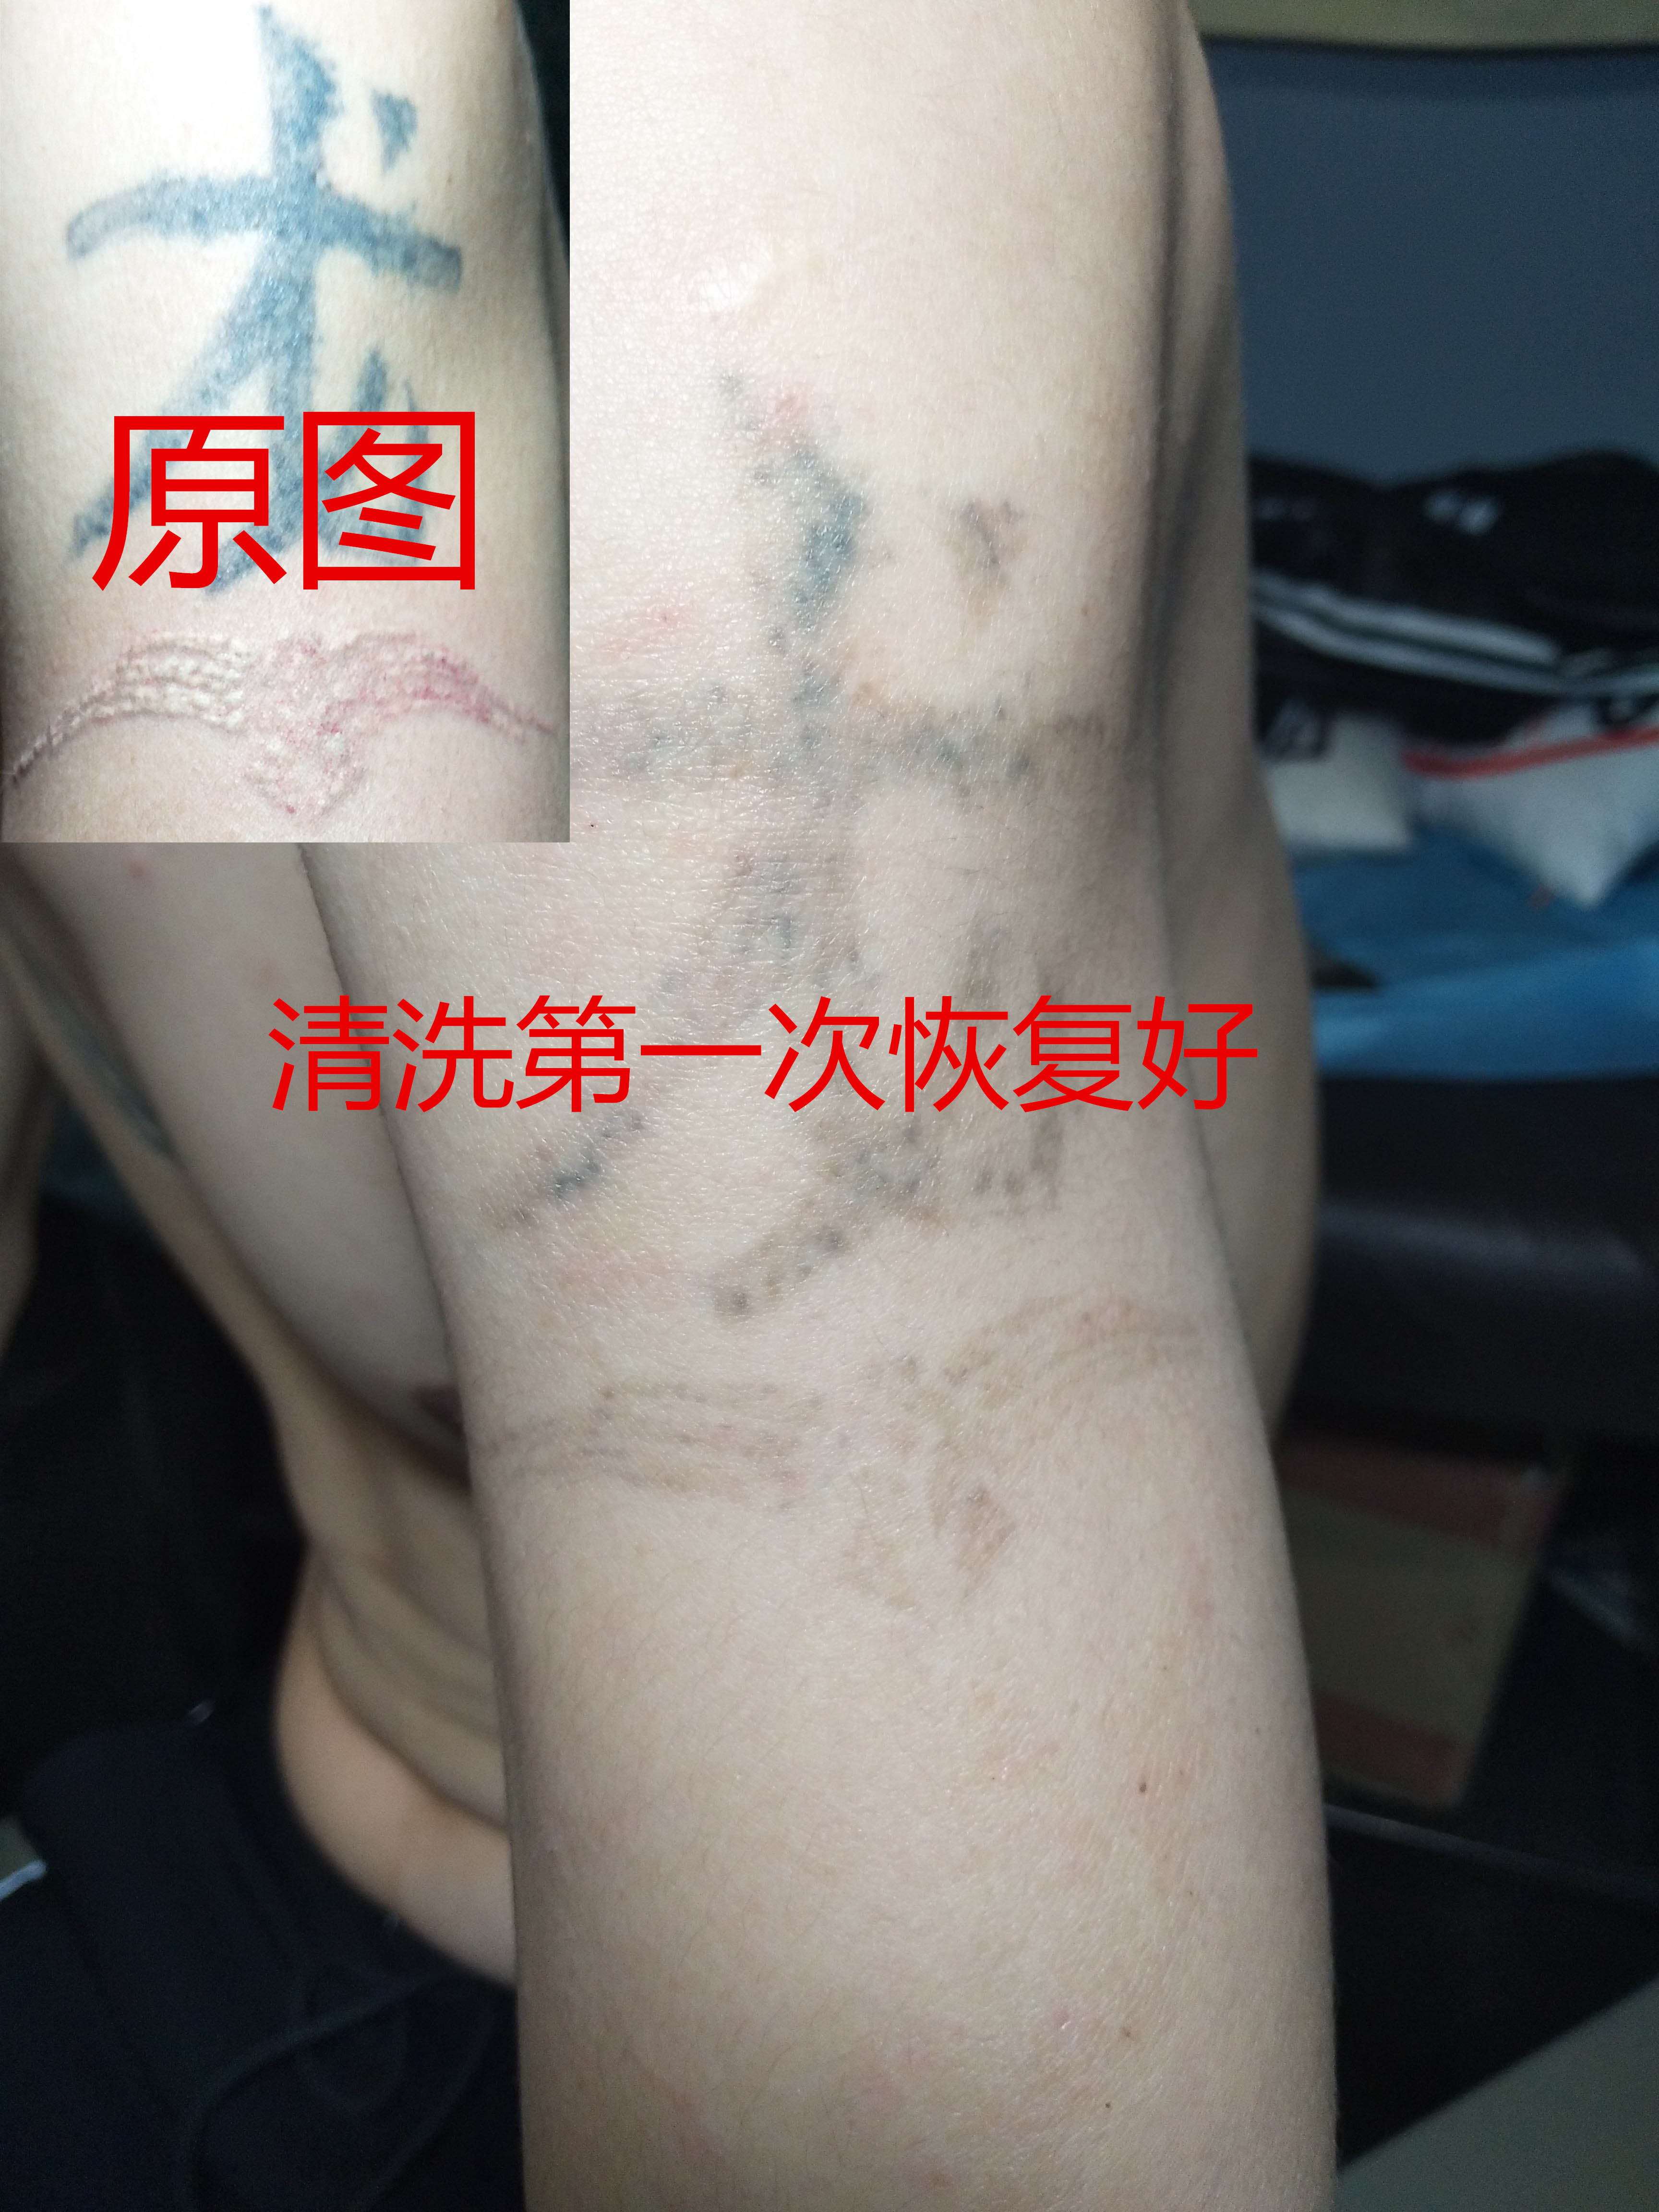 你还在担心纹身洗不掉吗？来西安国花刺纹身馆告诉你！